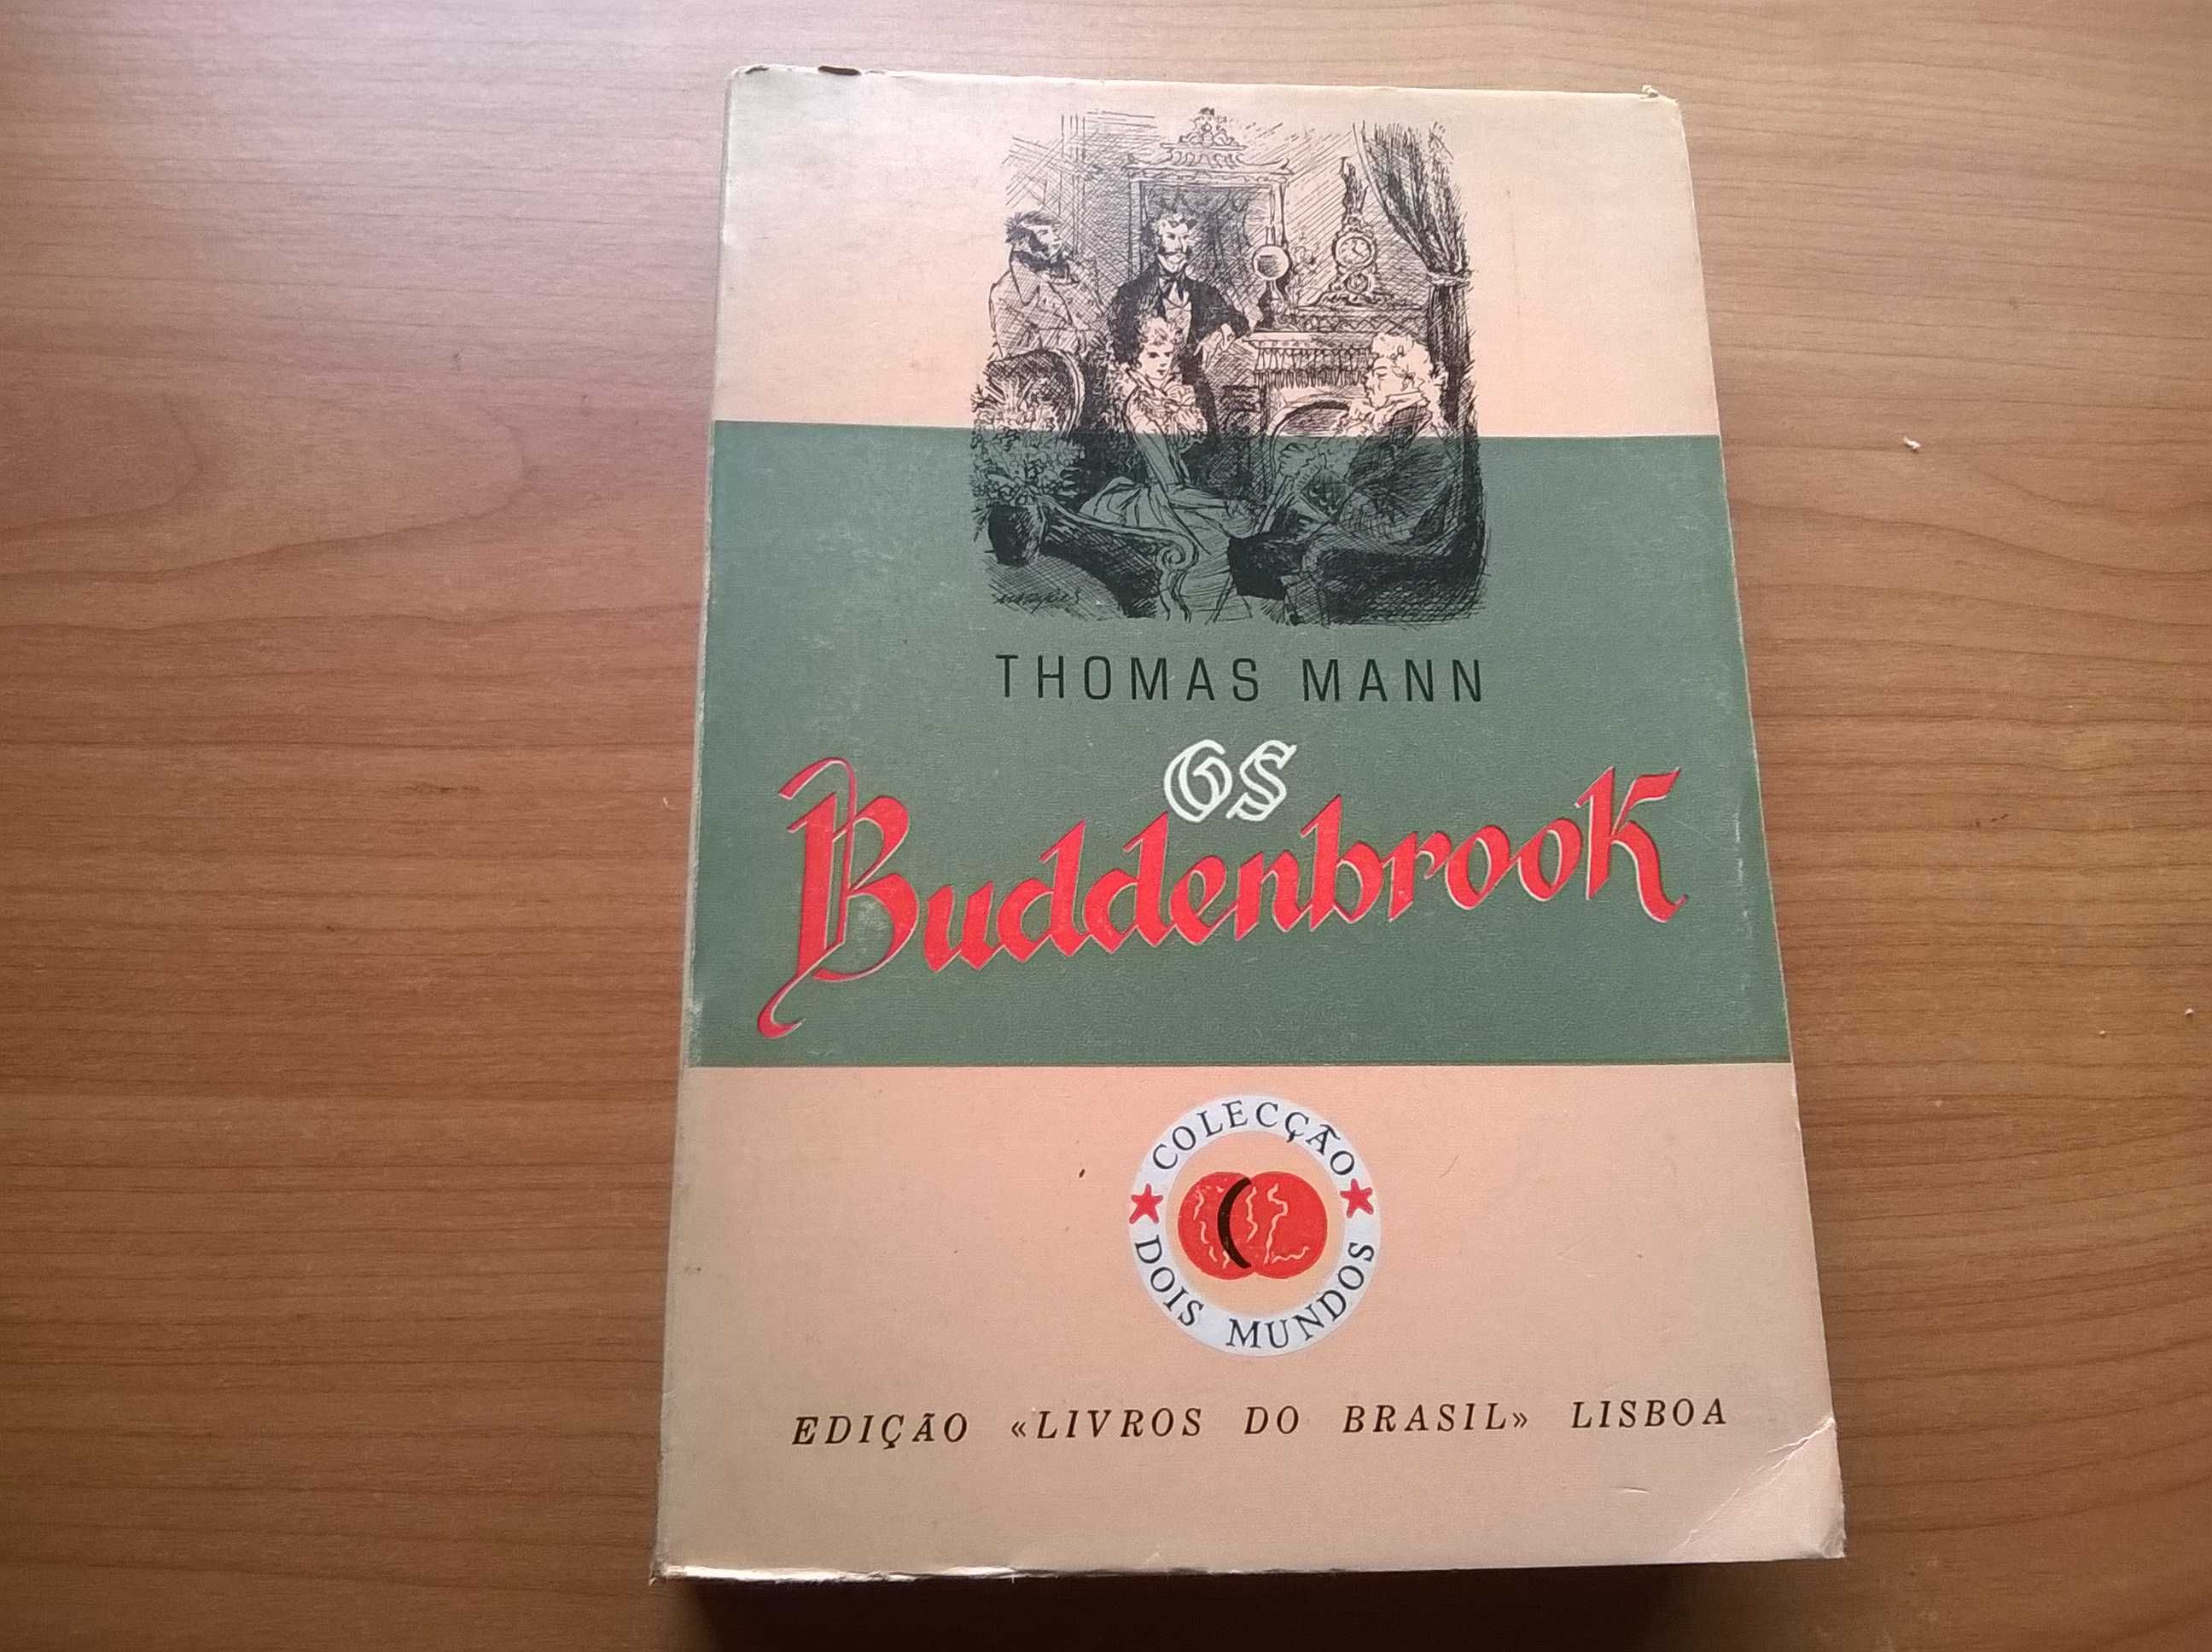 Os Bruddenbrook - Thomas Mann (portes grátis)